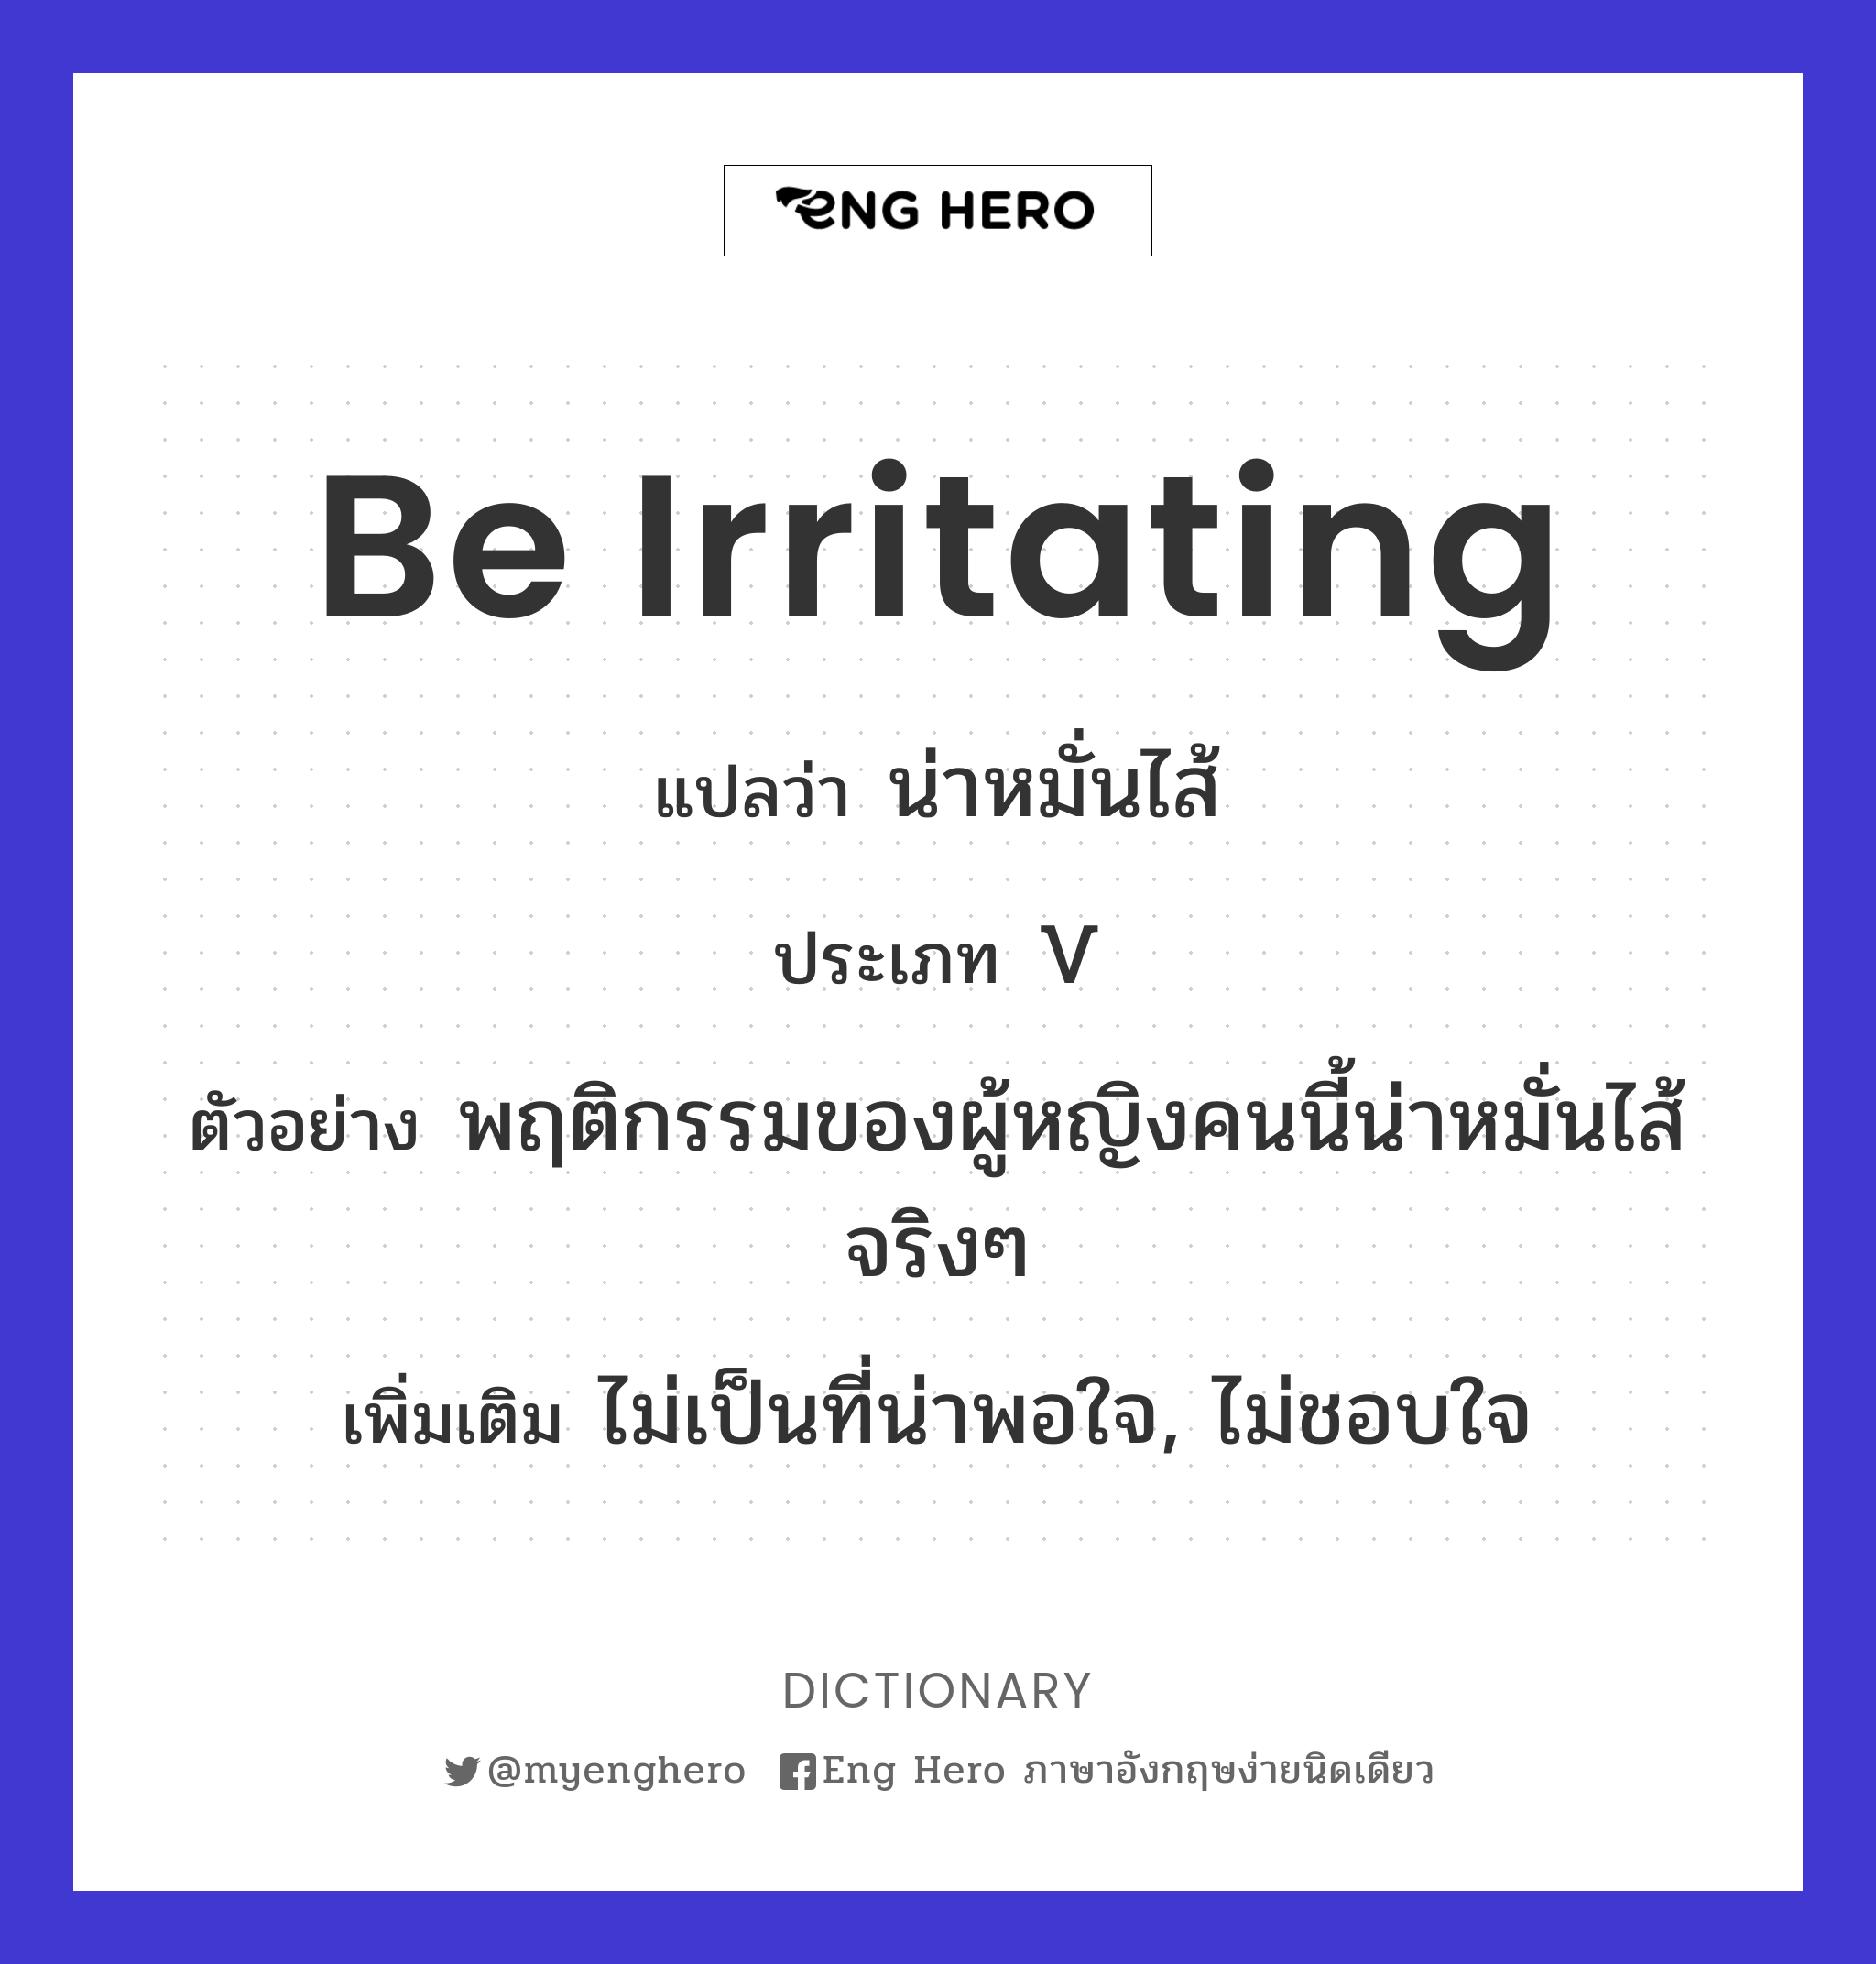 Be Irritating แปลว่า น่าหมั่นไส้ | Eng Hero เรียนภาษาอังกฤษ ออนไลน์ ฟรี